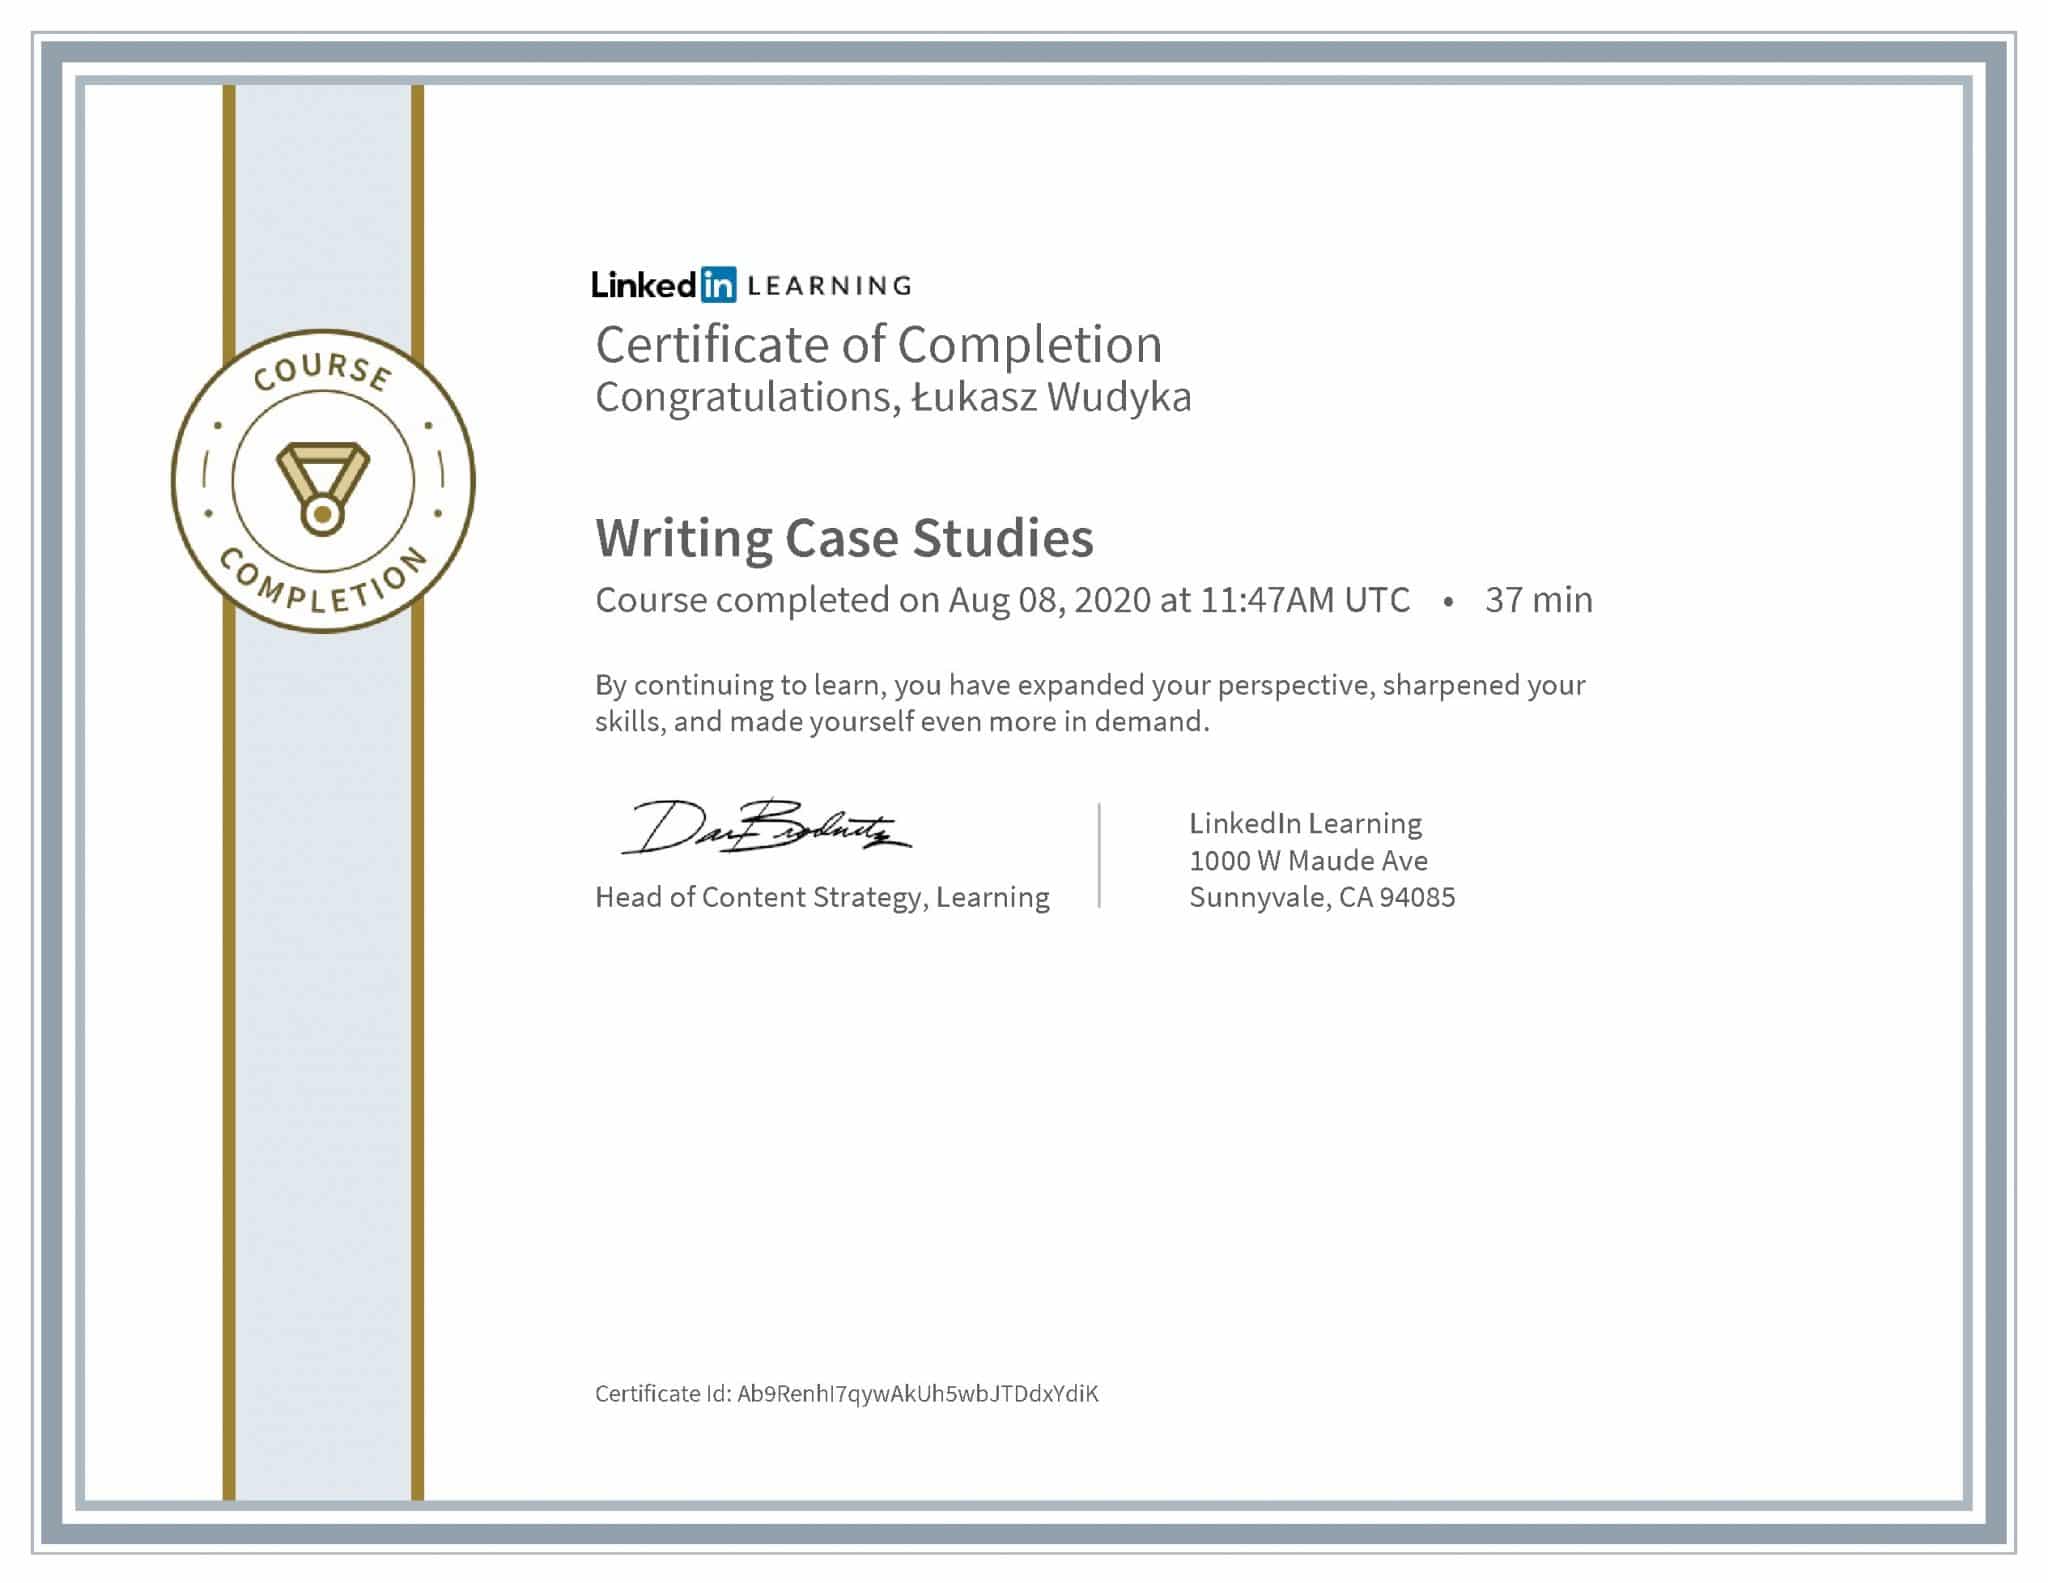 Łukasz Wudyka certyfikat LinkedIn Writing Case Studies